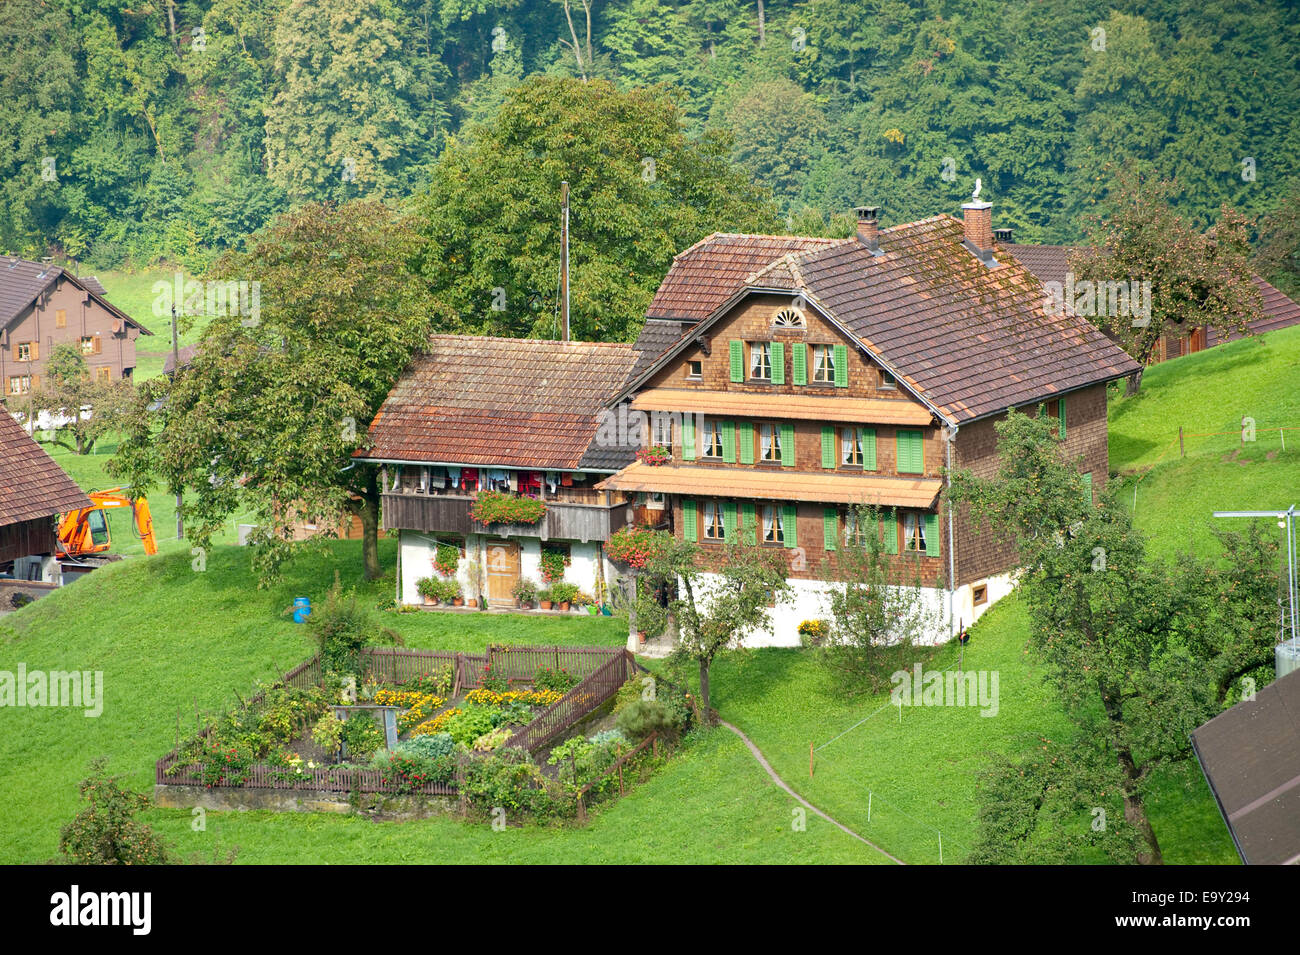 Typische ländliche Architektur, Haus in einem Tal in der Nähe von Kerns, Kanton Obwalden, Schweiz Stockfoto